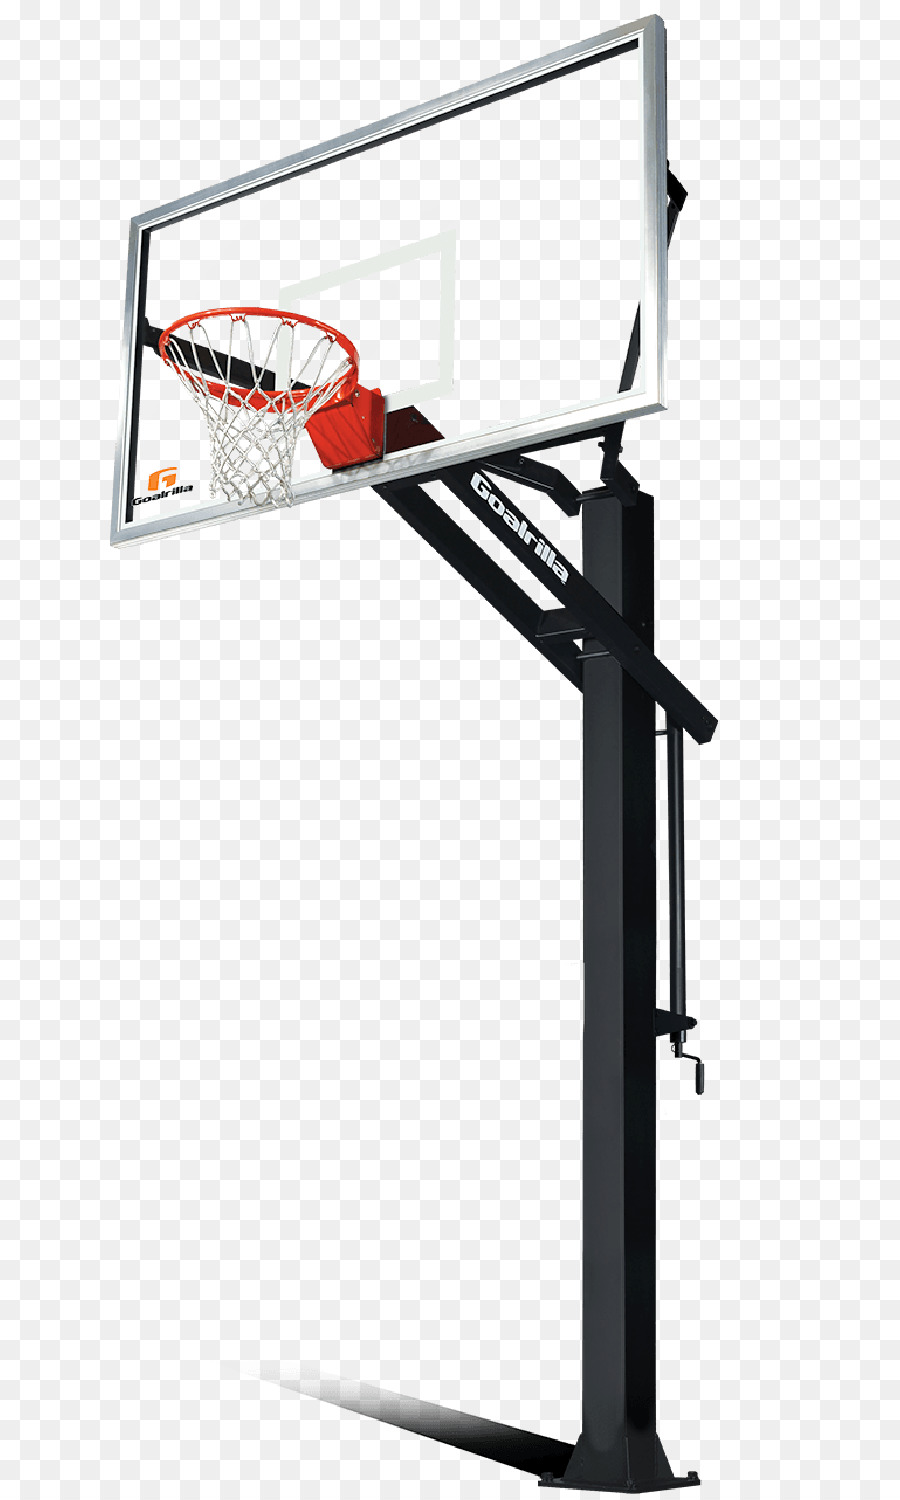 Backboard Canestro Basketball court Rebound - basketball png download - 750*1496 - Free Transparent Backboard png Download.